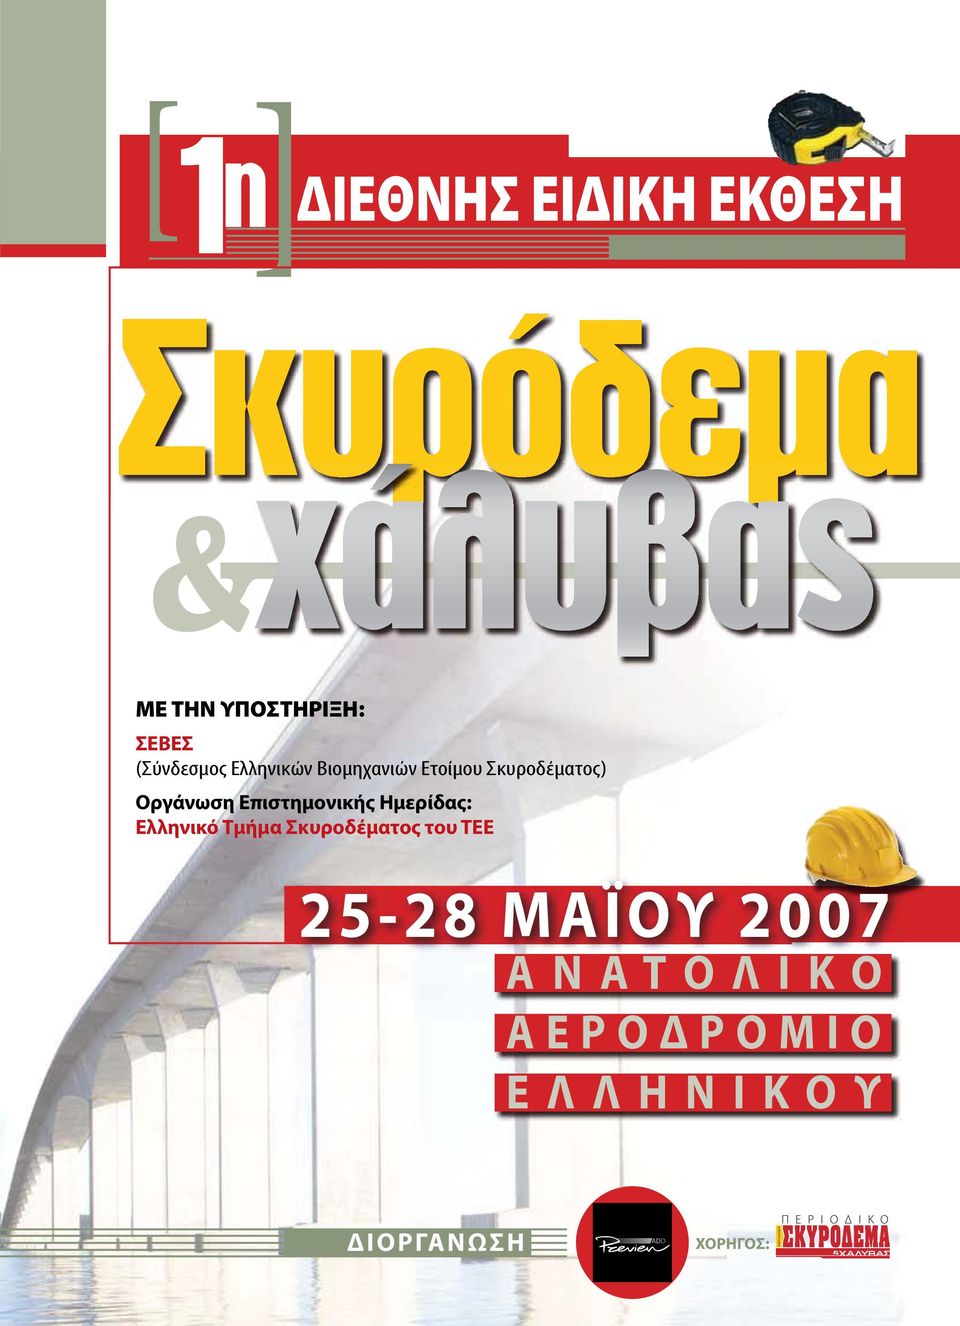 Επιστημονικής Ημερίδας: Ελληνικό Τμήμα Σκυροδέματος του ΤΕΕ 25-28